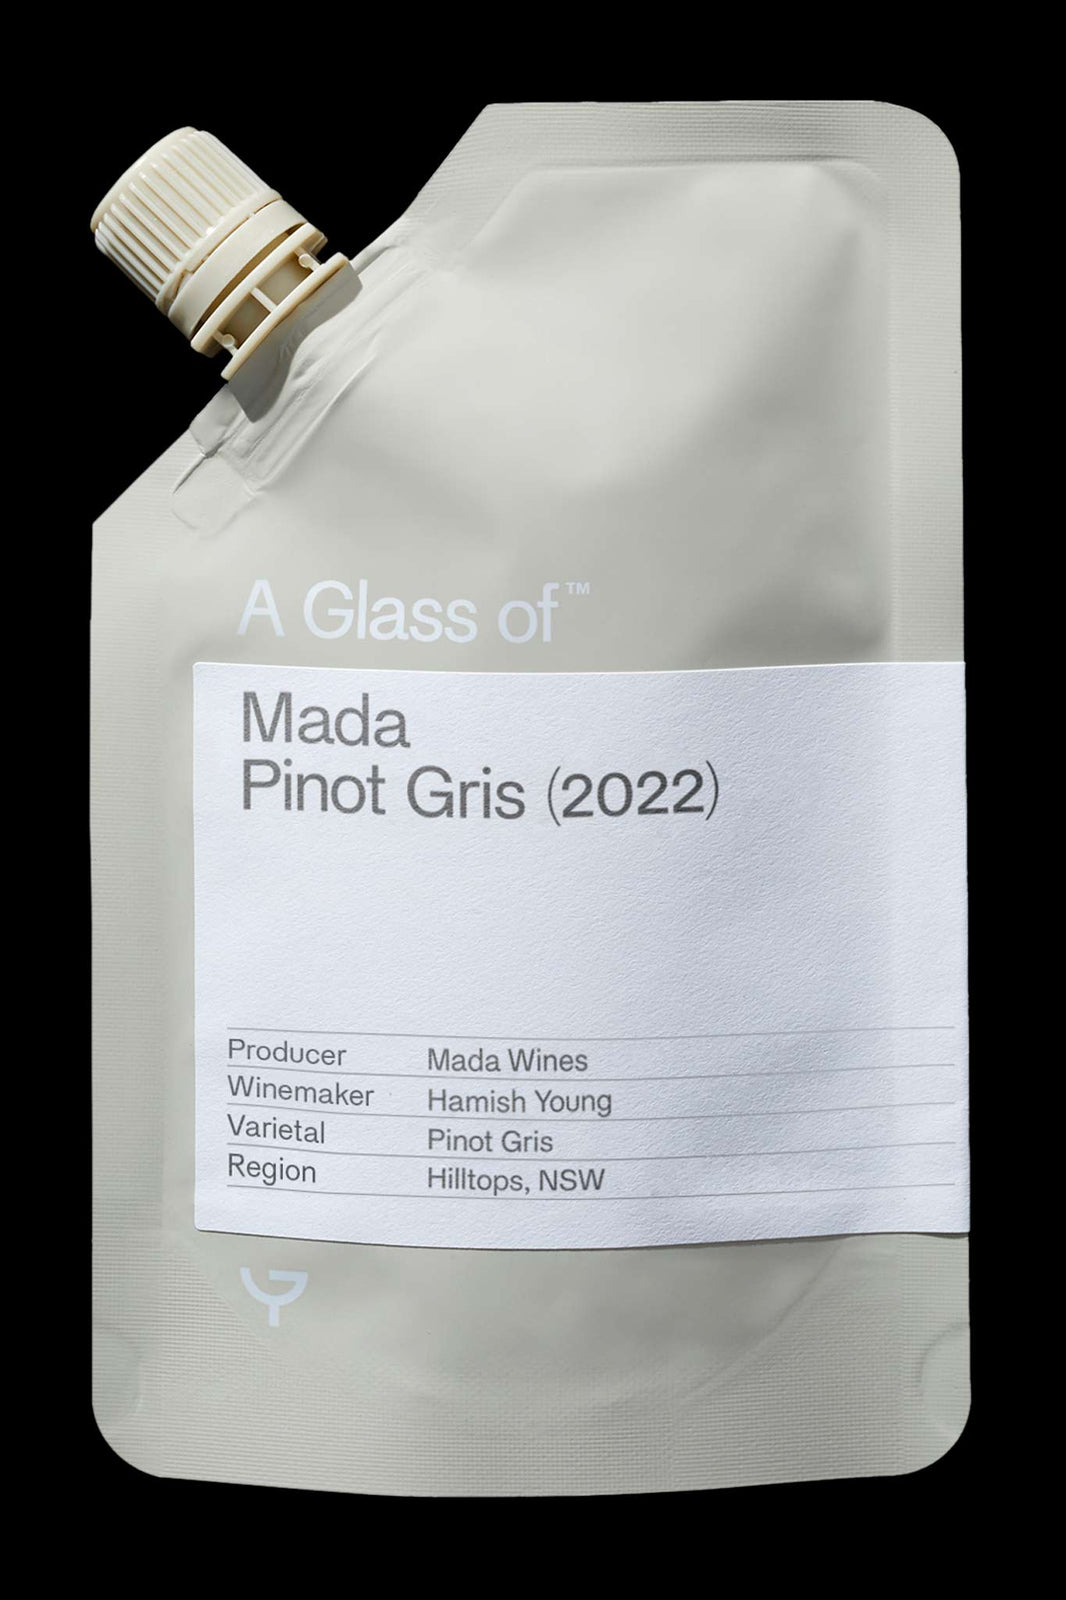 Mada Pinot Gris (2022)